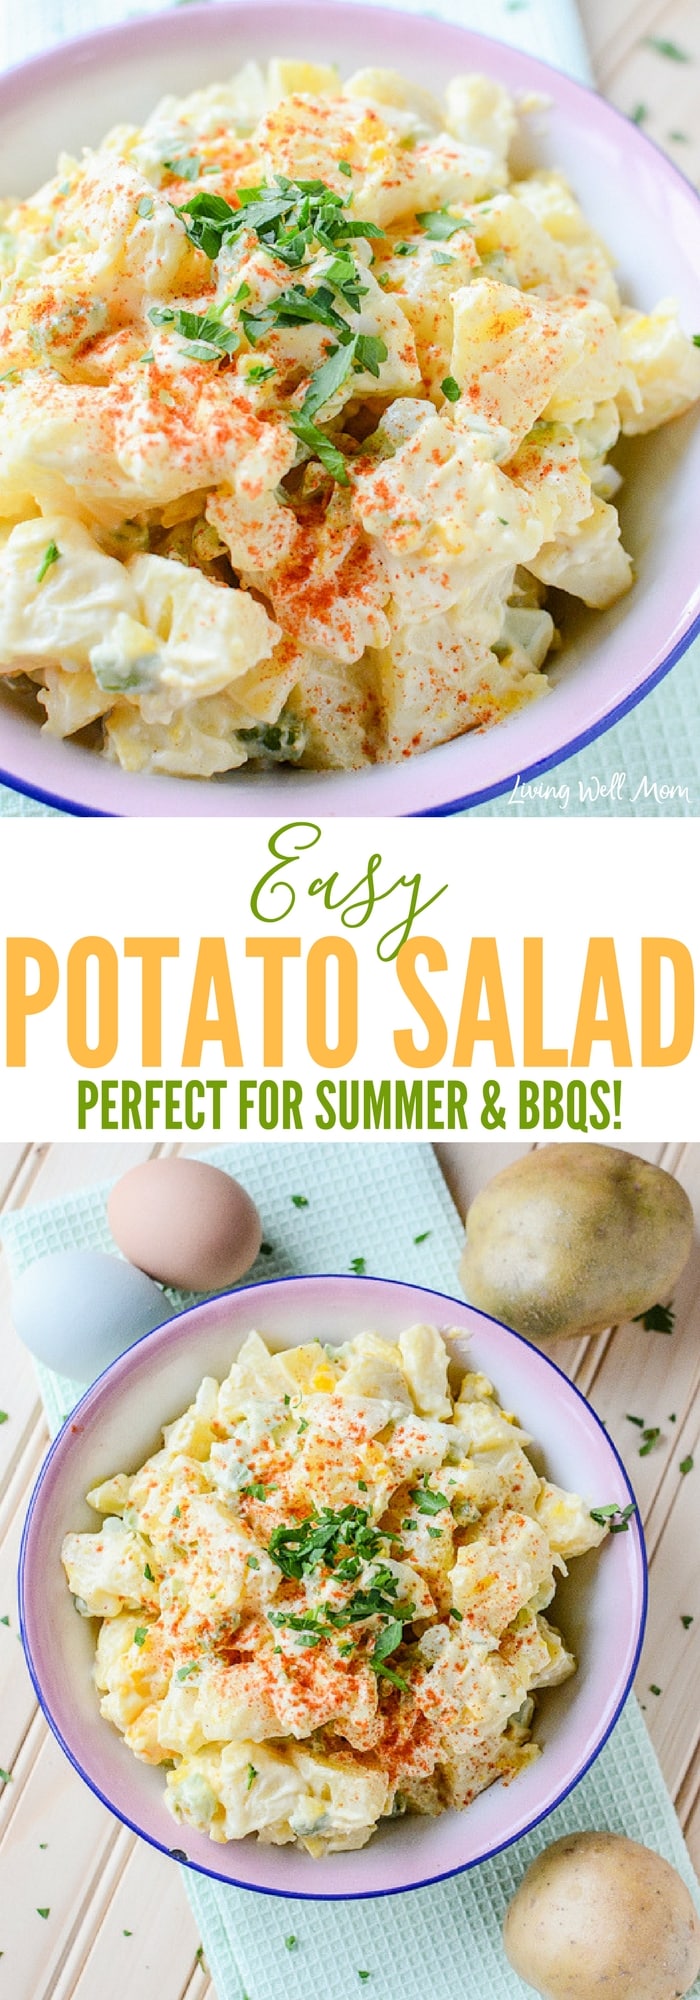 collection of photos for easy potato salad recipe